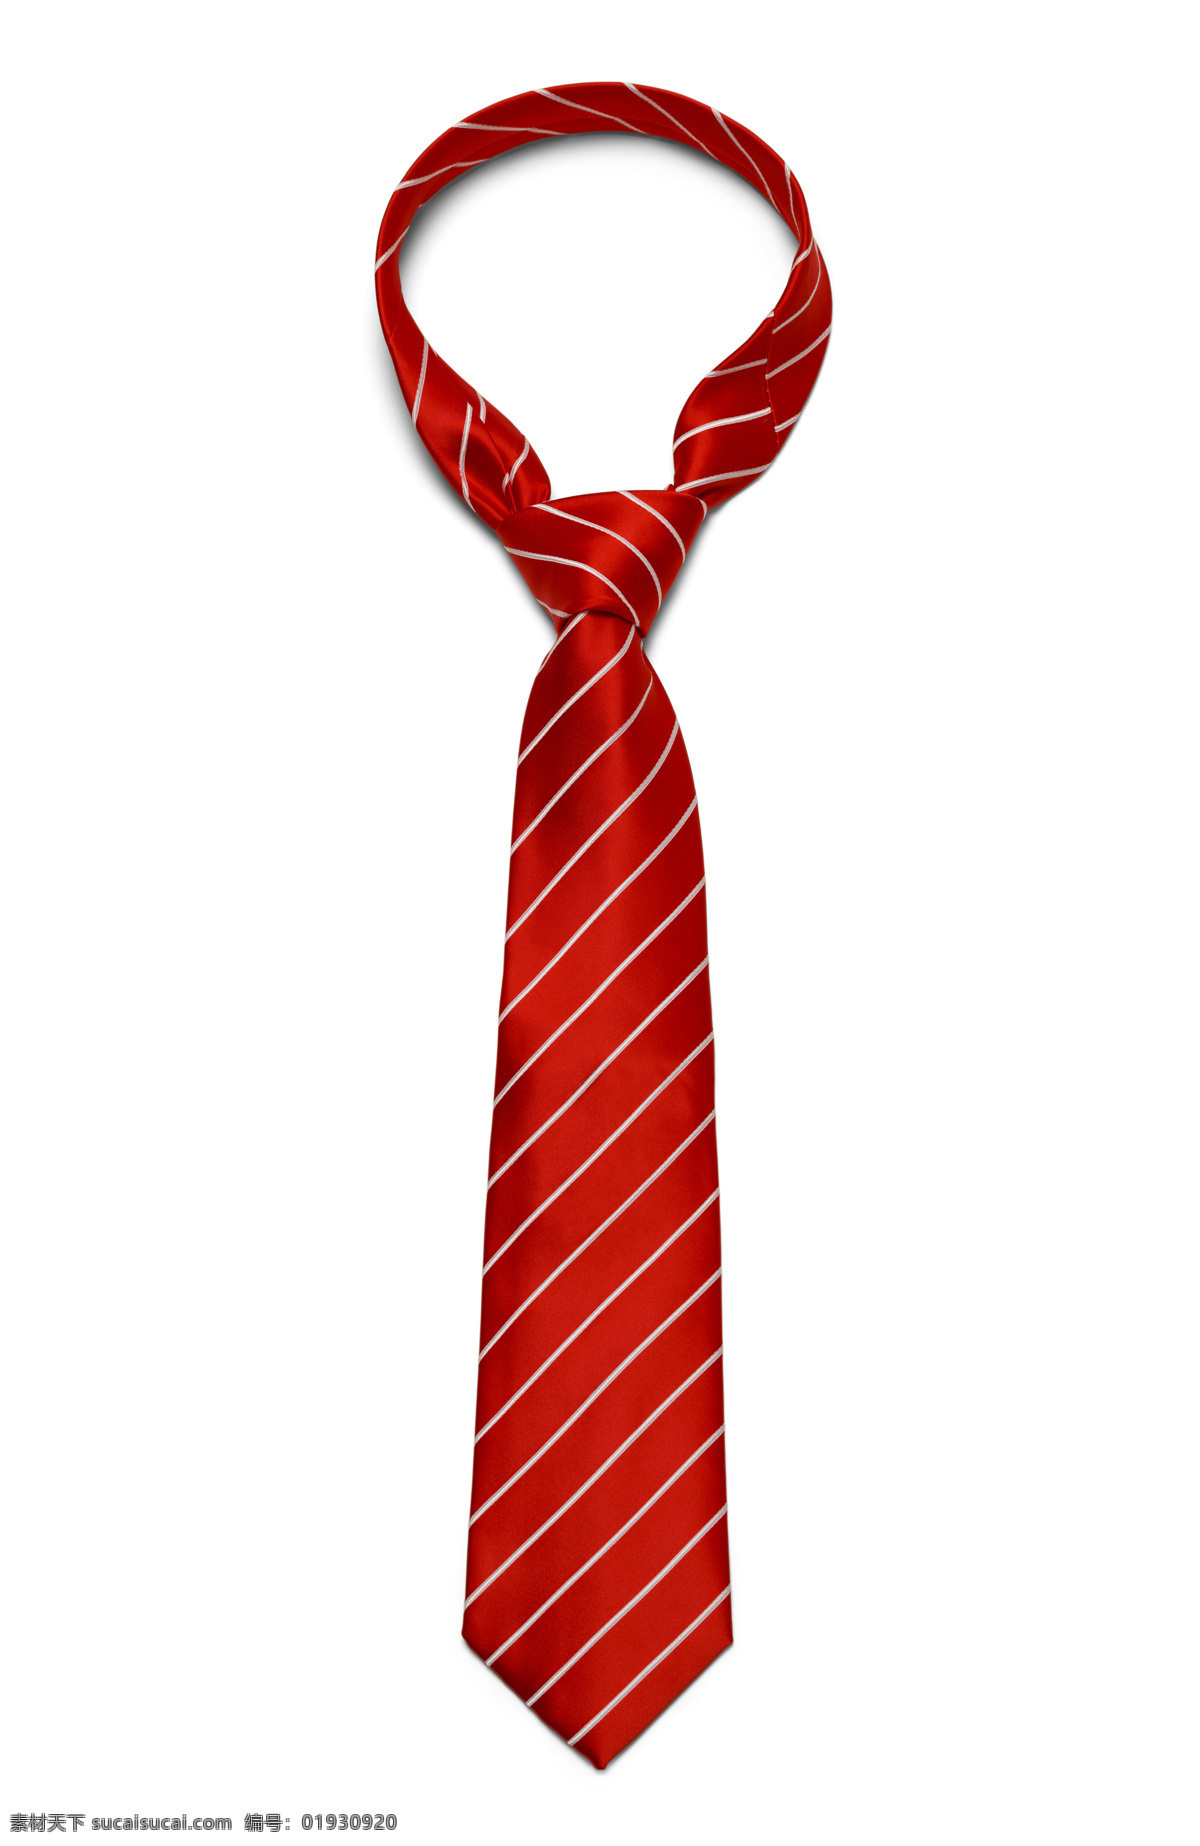 红色 条纹 领带 男士领带 领结 领夹 西服 西装 职业装 服装搭配 服饰搭配 珠宝服饰 生活百科